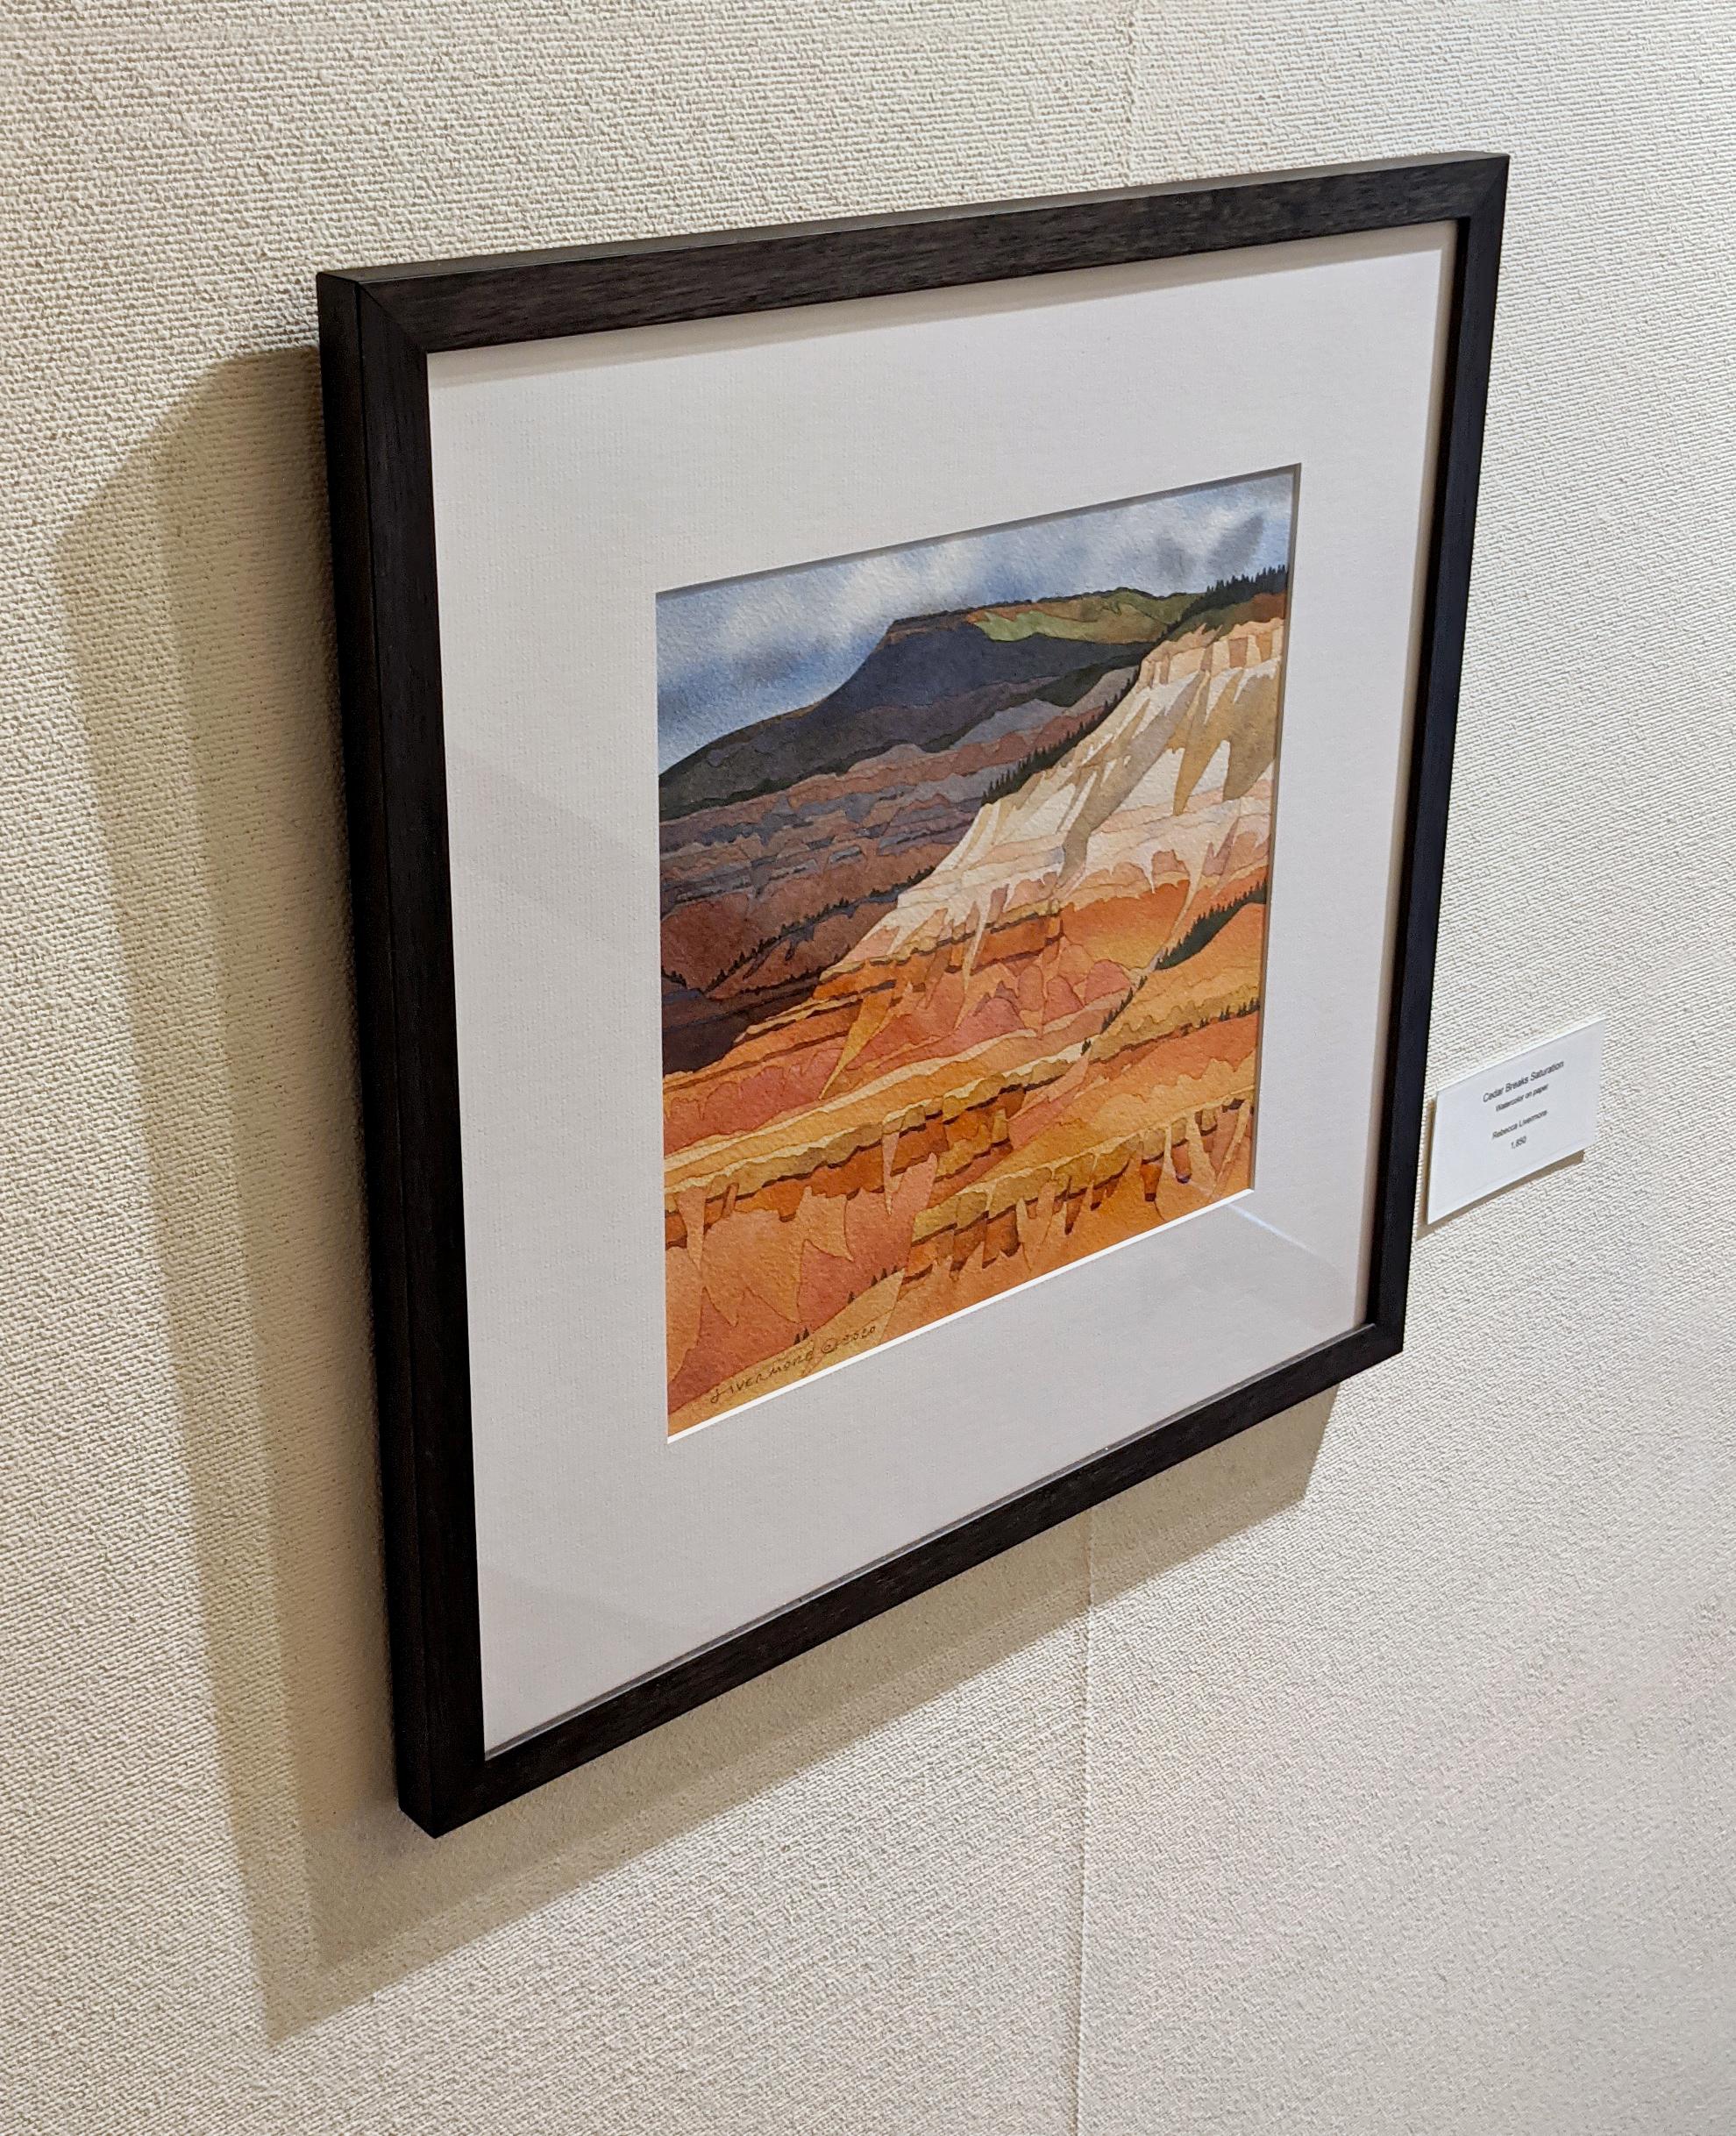 Zedernbrüche Sättigung
11 x 11 Zoll (Gerahmte Größe: 18 x 17,75 Zoll)
aquarell auf Papier (mit lichtechten Pigmenten gemalt, säurefreies Papier und archivtaugliche Einrahmungsmaterialien)
$1,850

Landschaft: Cedar Breaks National Monument, Utah.